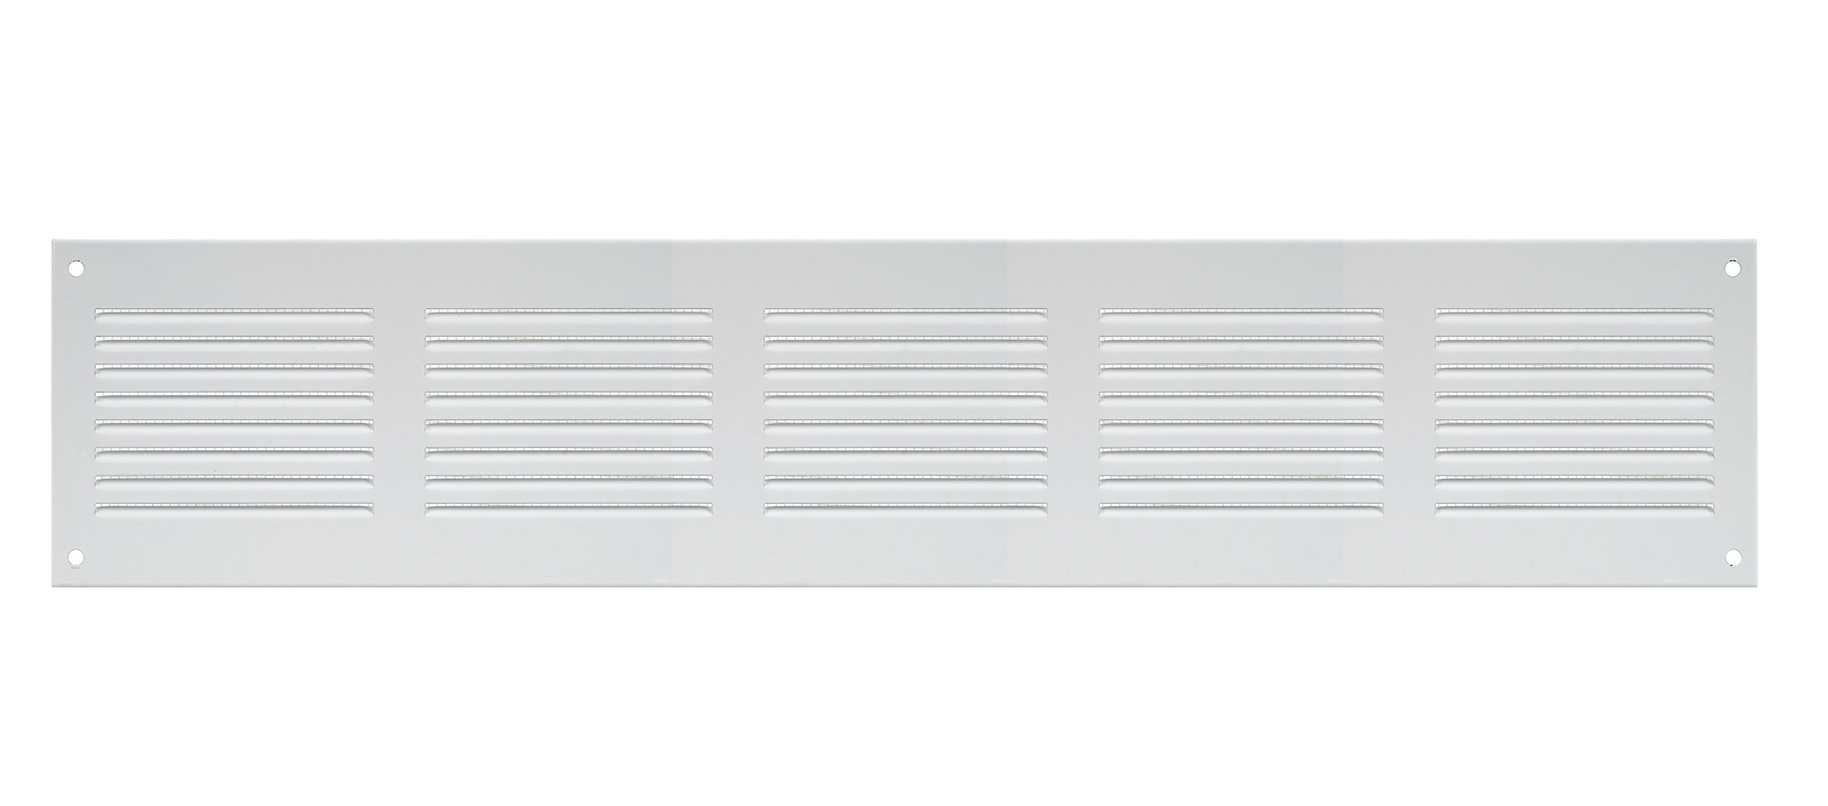 Решетка радиаторная Europlast MR5010 белая алюминиевая решетка vr1330р europlast 06 0641 308